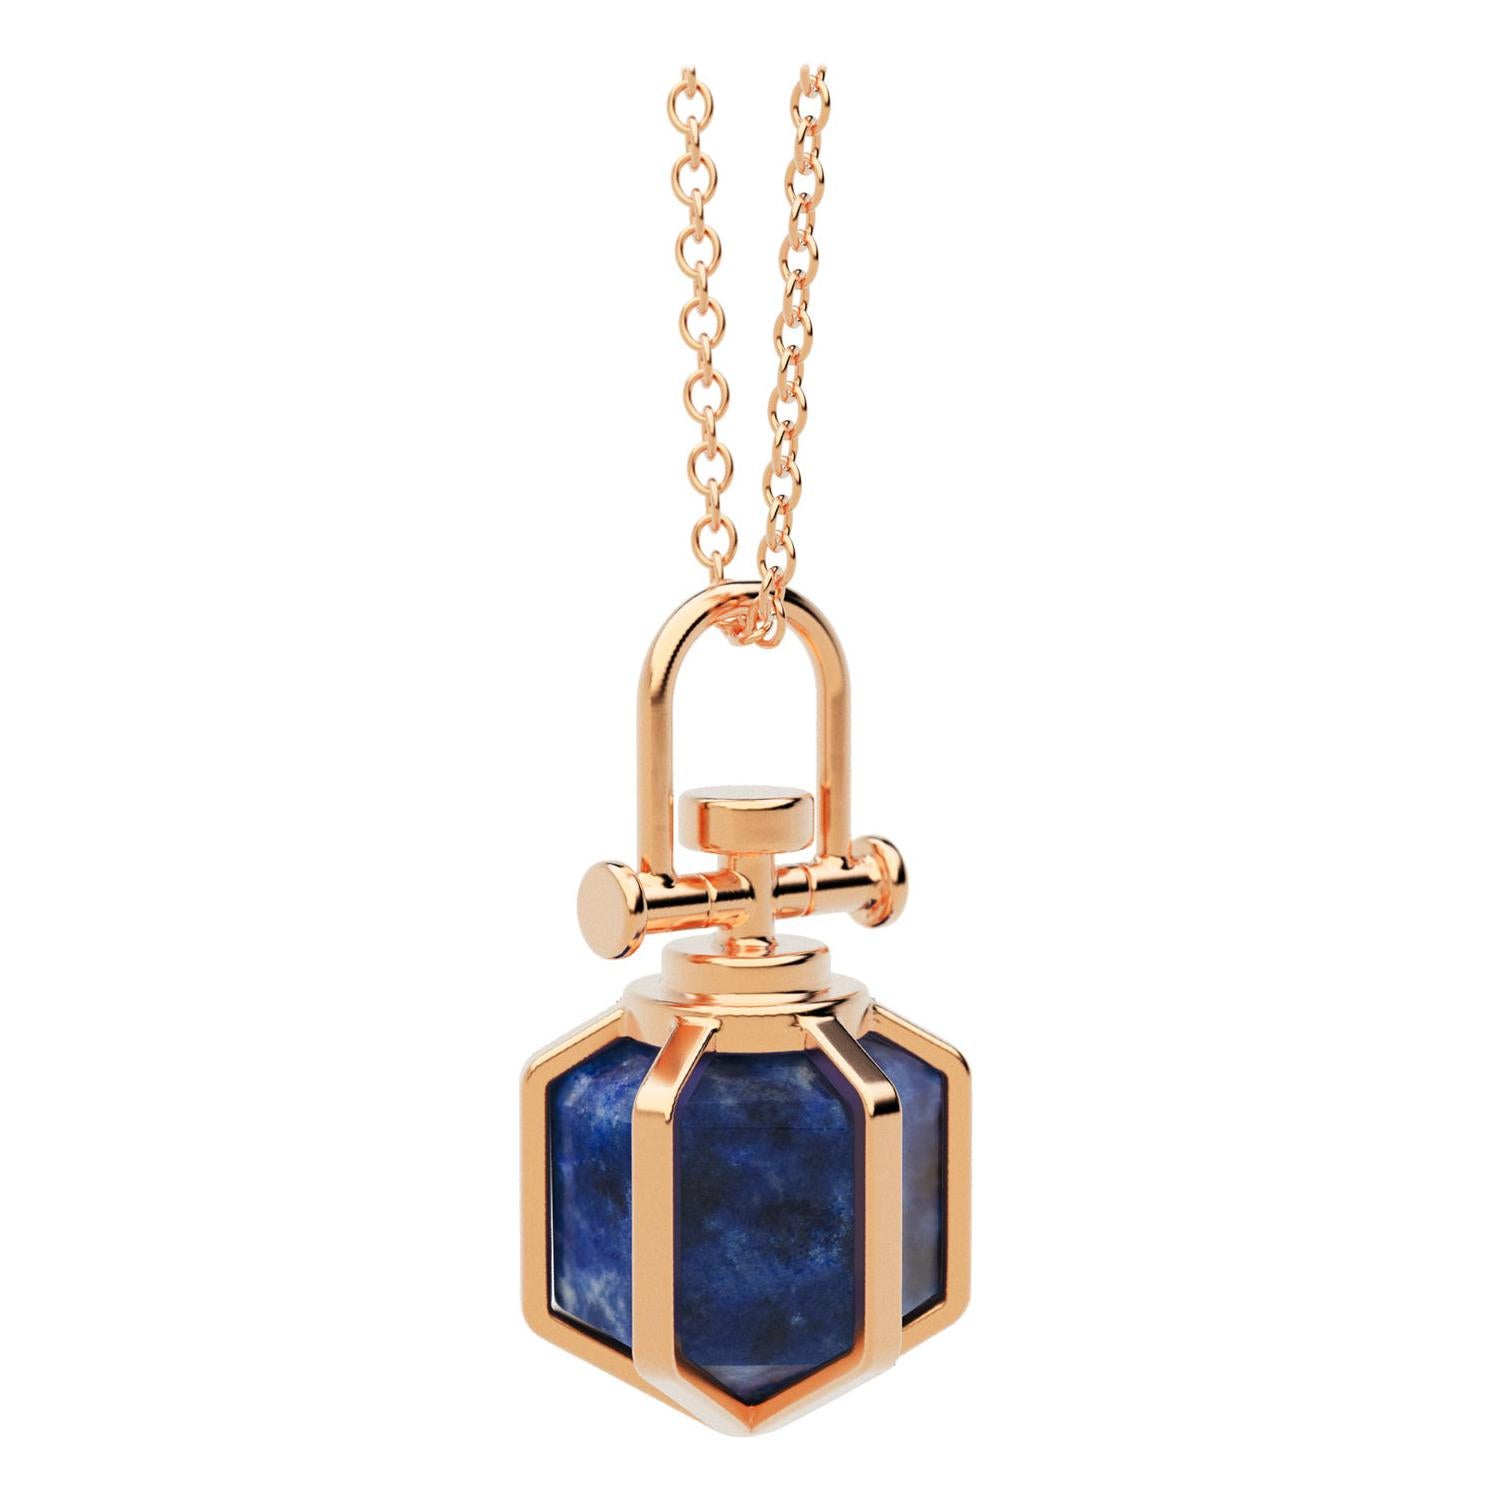 Modern Sacred Geometrical Dainty 18k Rose Gold Amulet Necklace w/ Lapis Lazuli